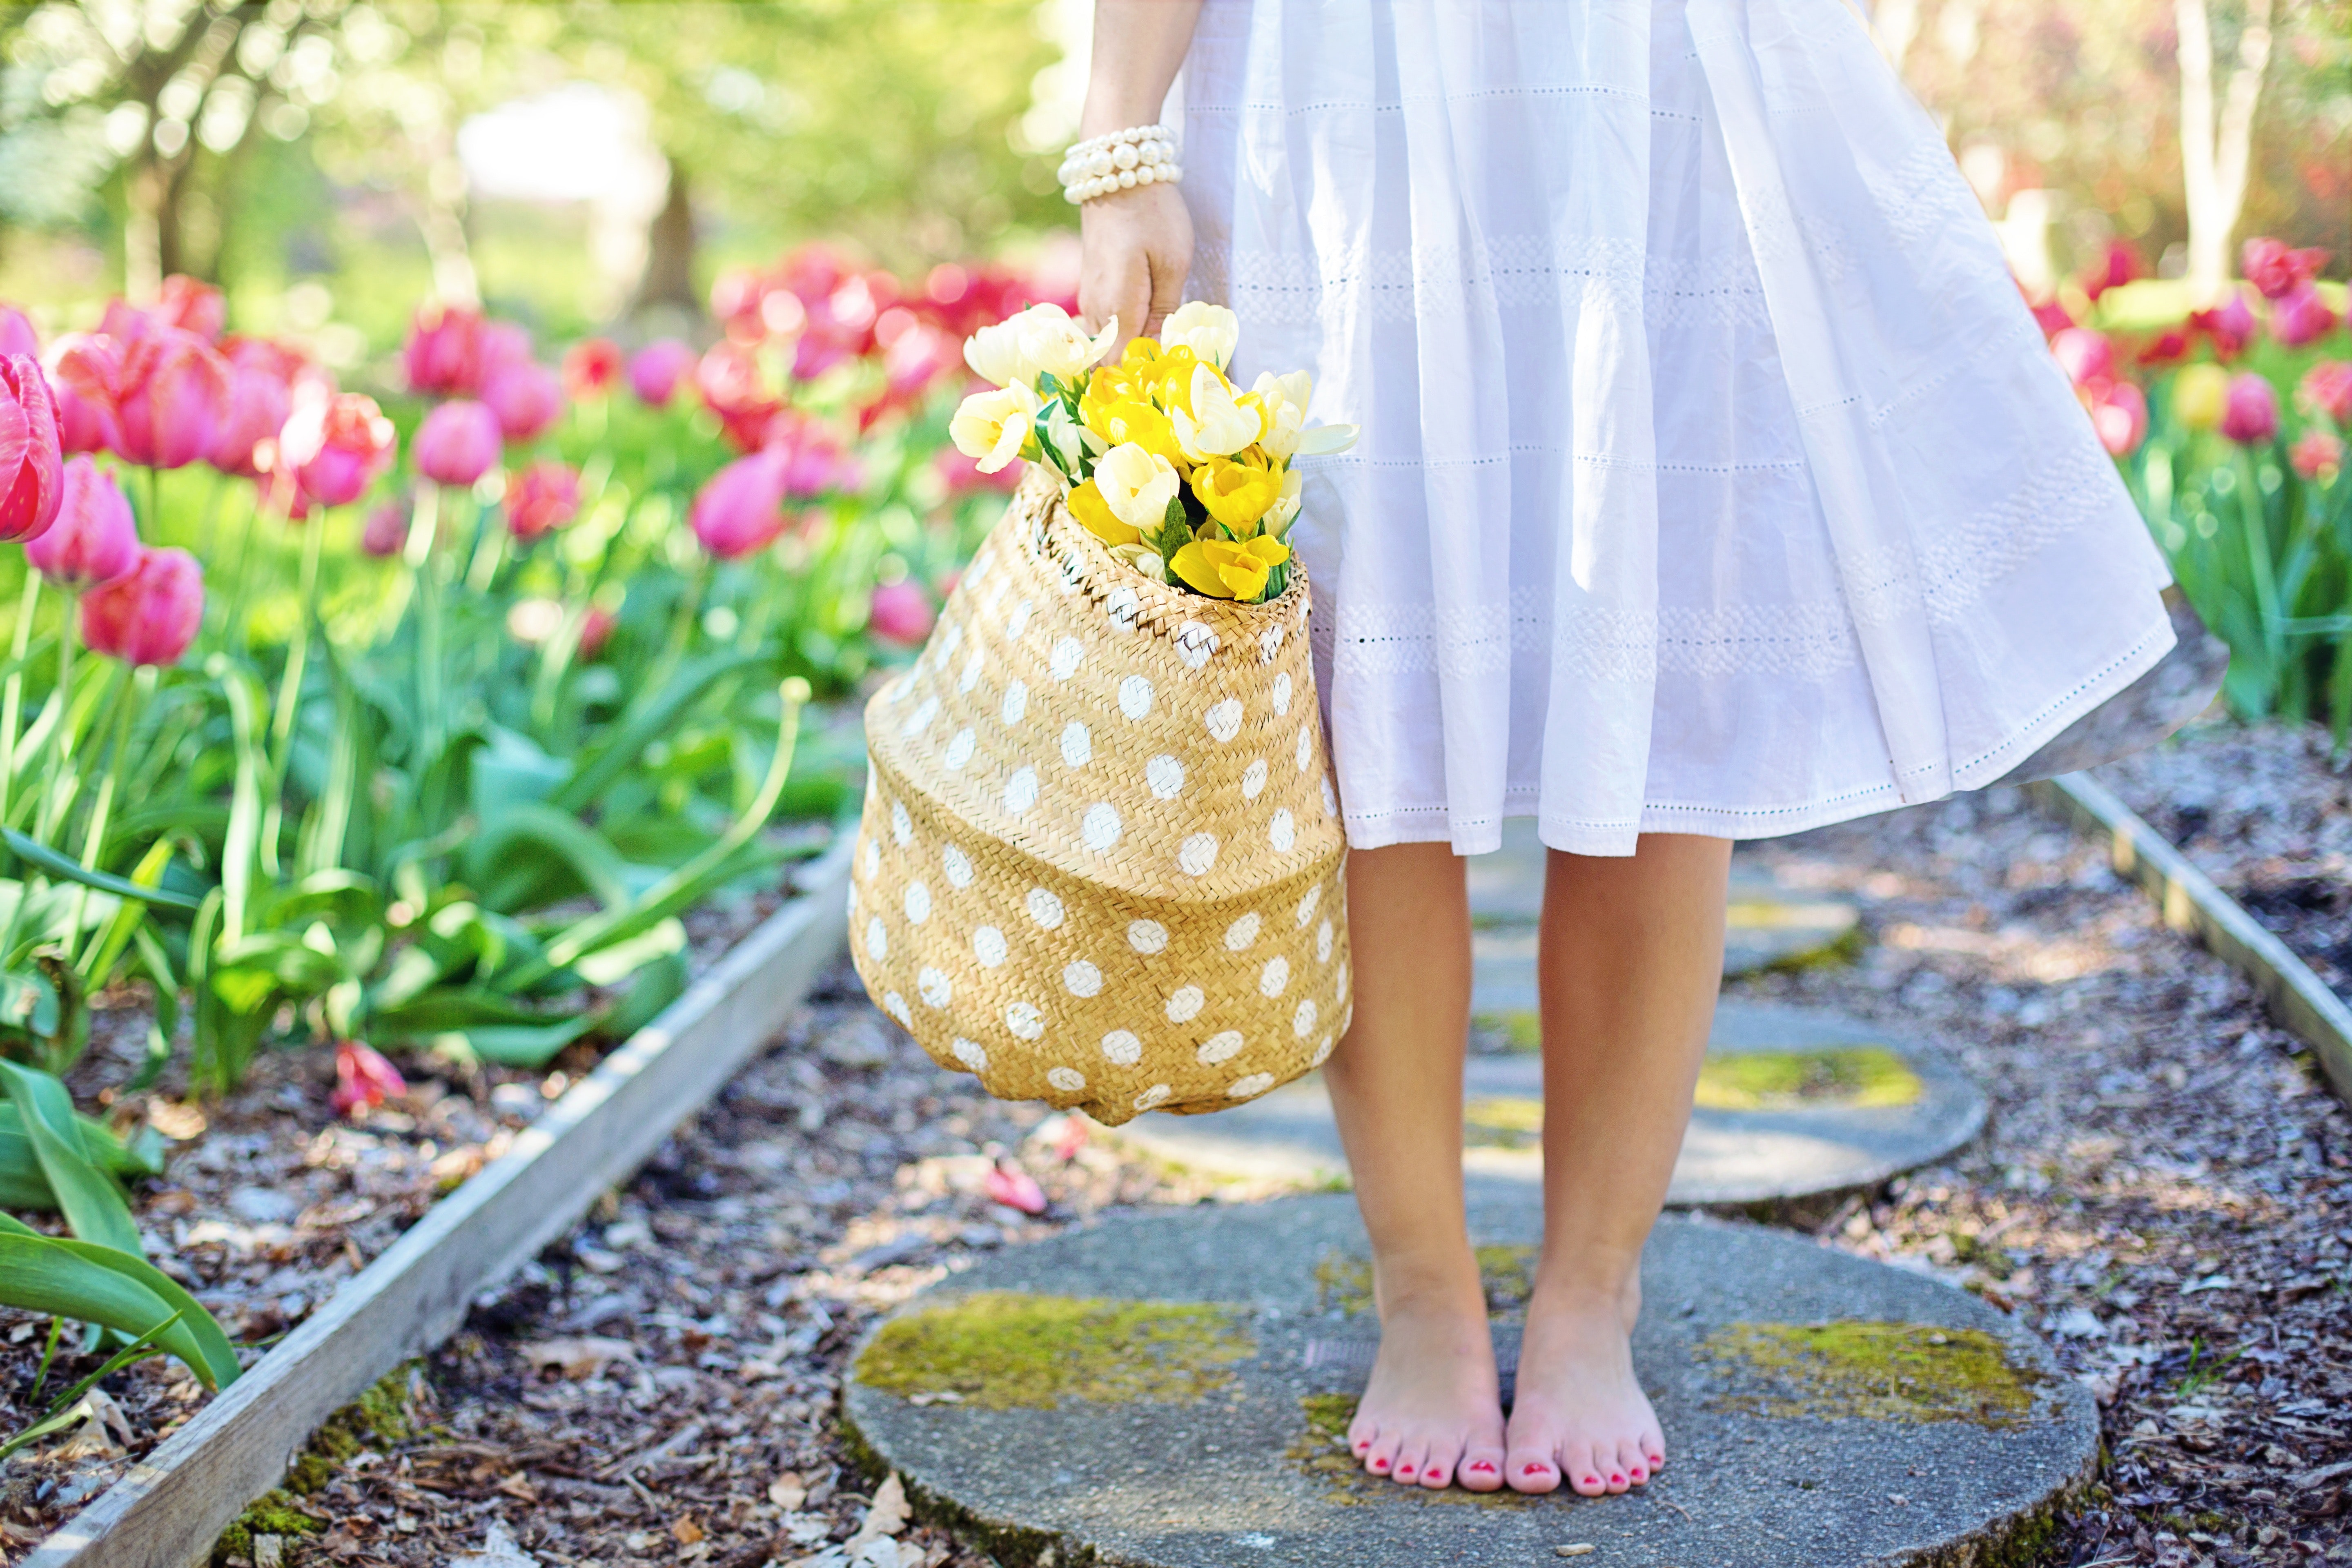 barefoot-basket-blooming-413707